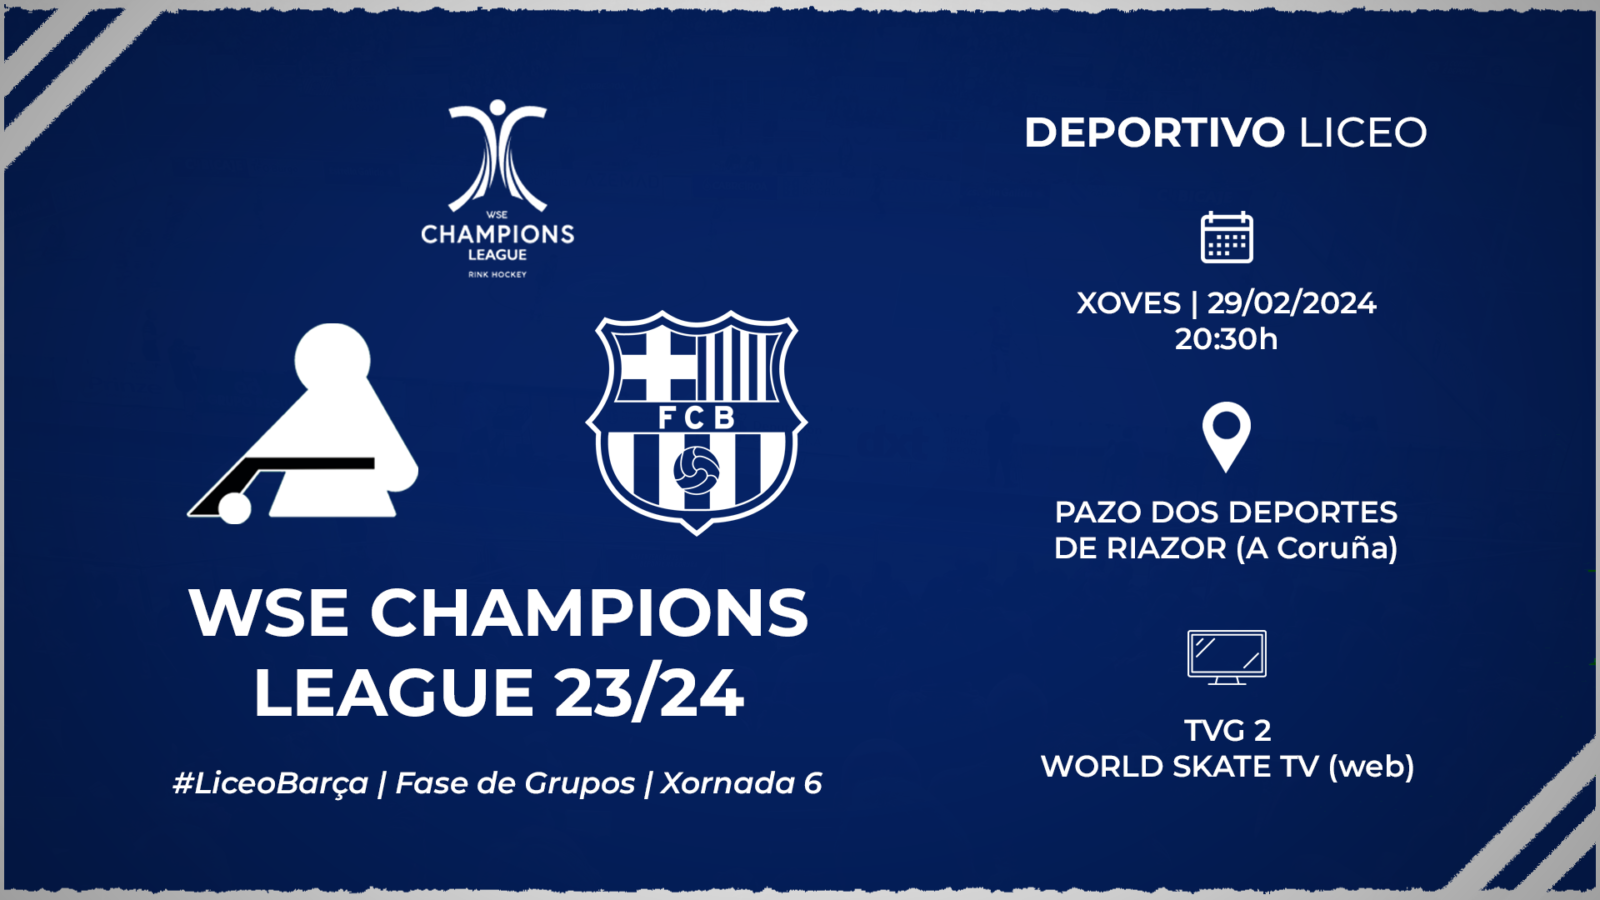 #LiceoBarça | ENTRADAS para la jornada 6 de la WSE Champions League 23/24